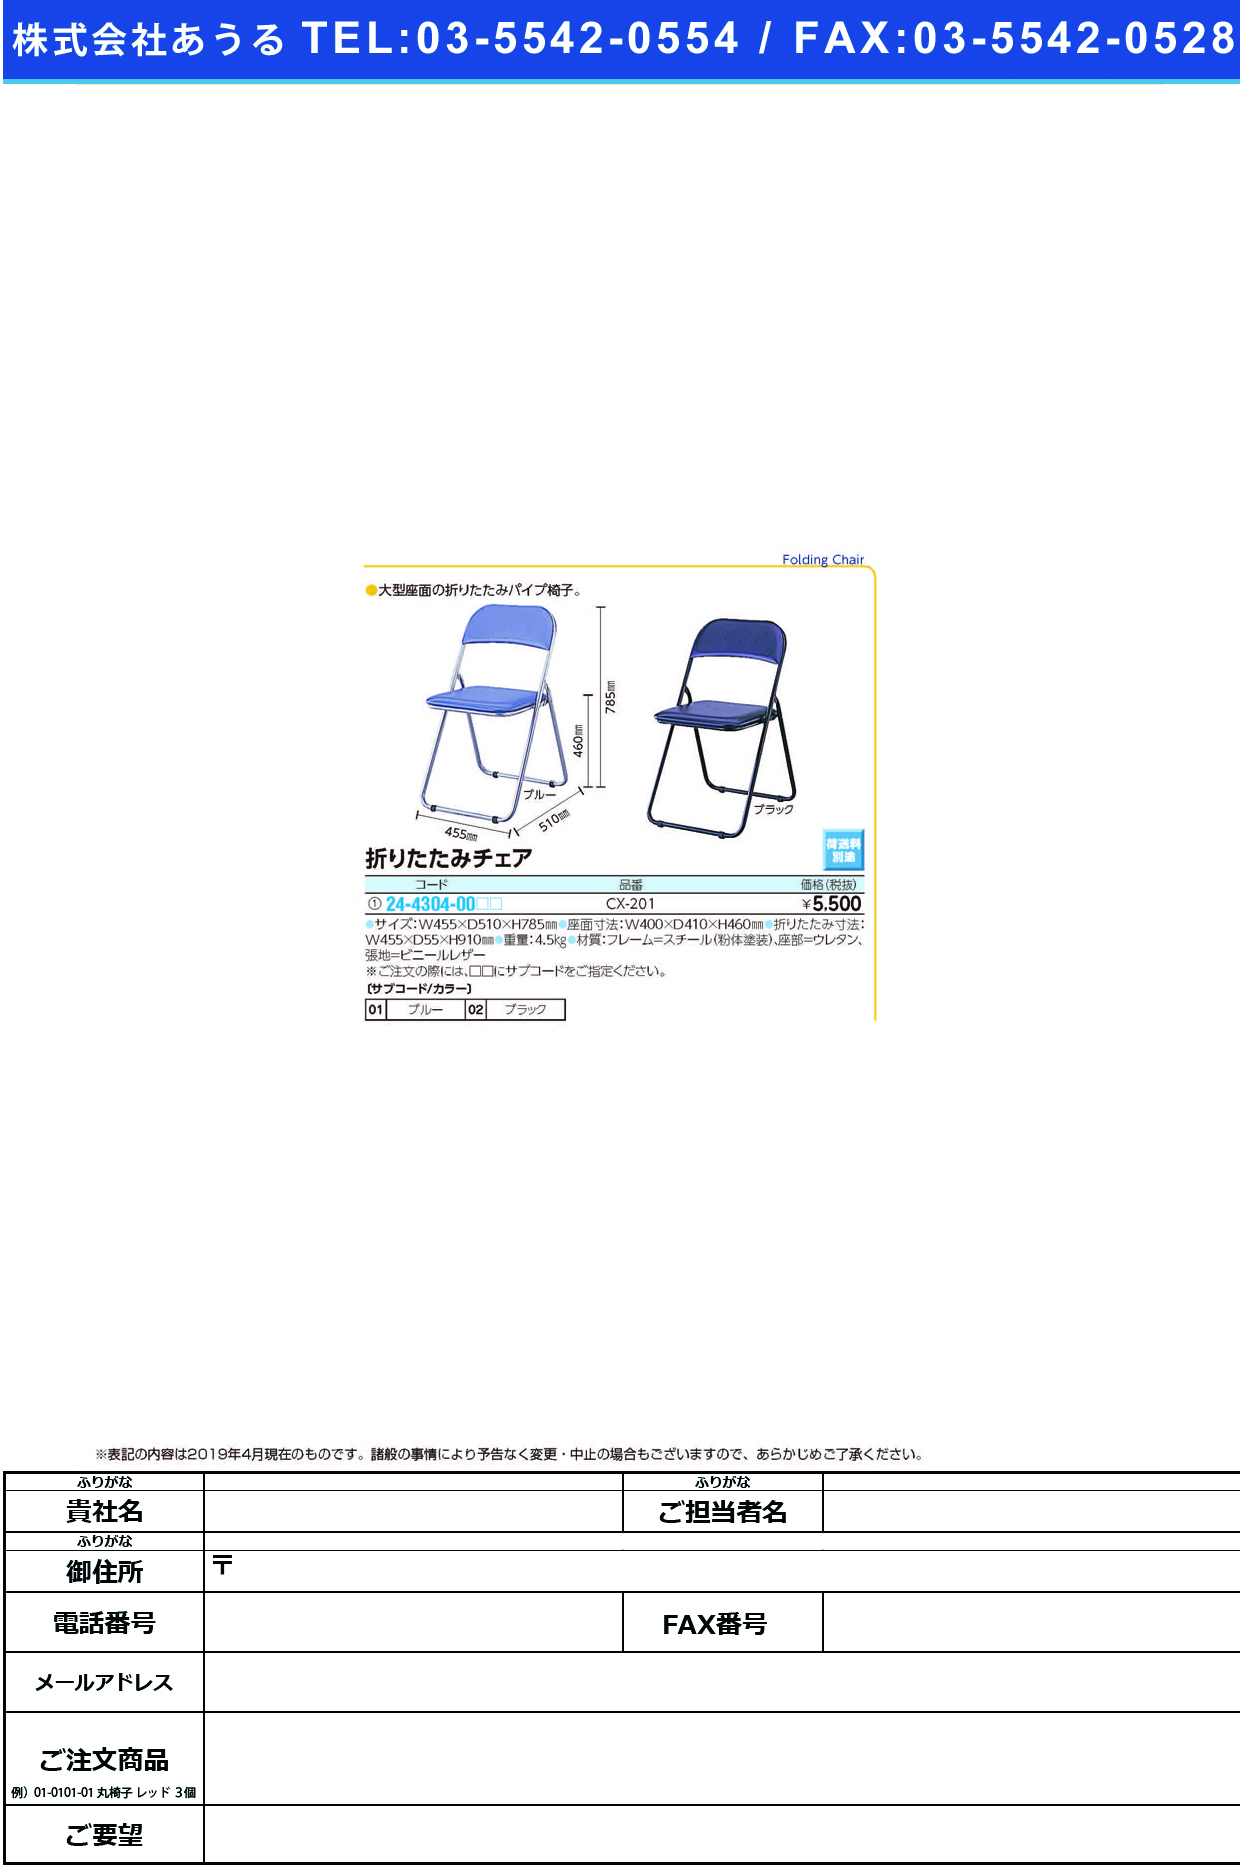 (24-4304-00)折りたたみチェア CX-201 ｵﾘﾀﾀﾐﾁｪｱ ブルー(ナカバヤシ)【1台単位】【2019年カタログ商品】